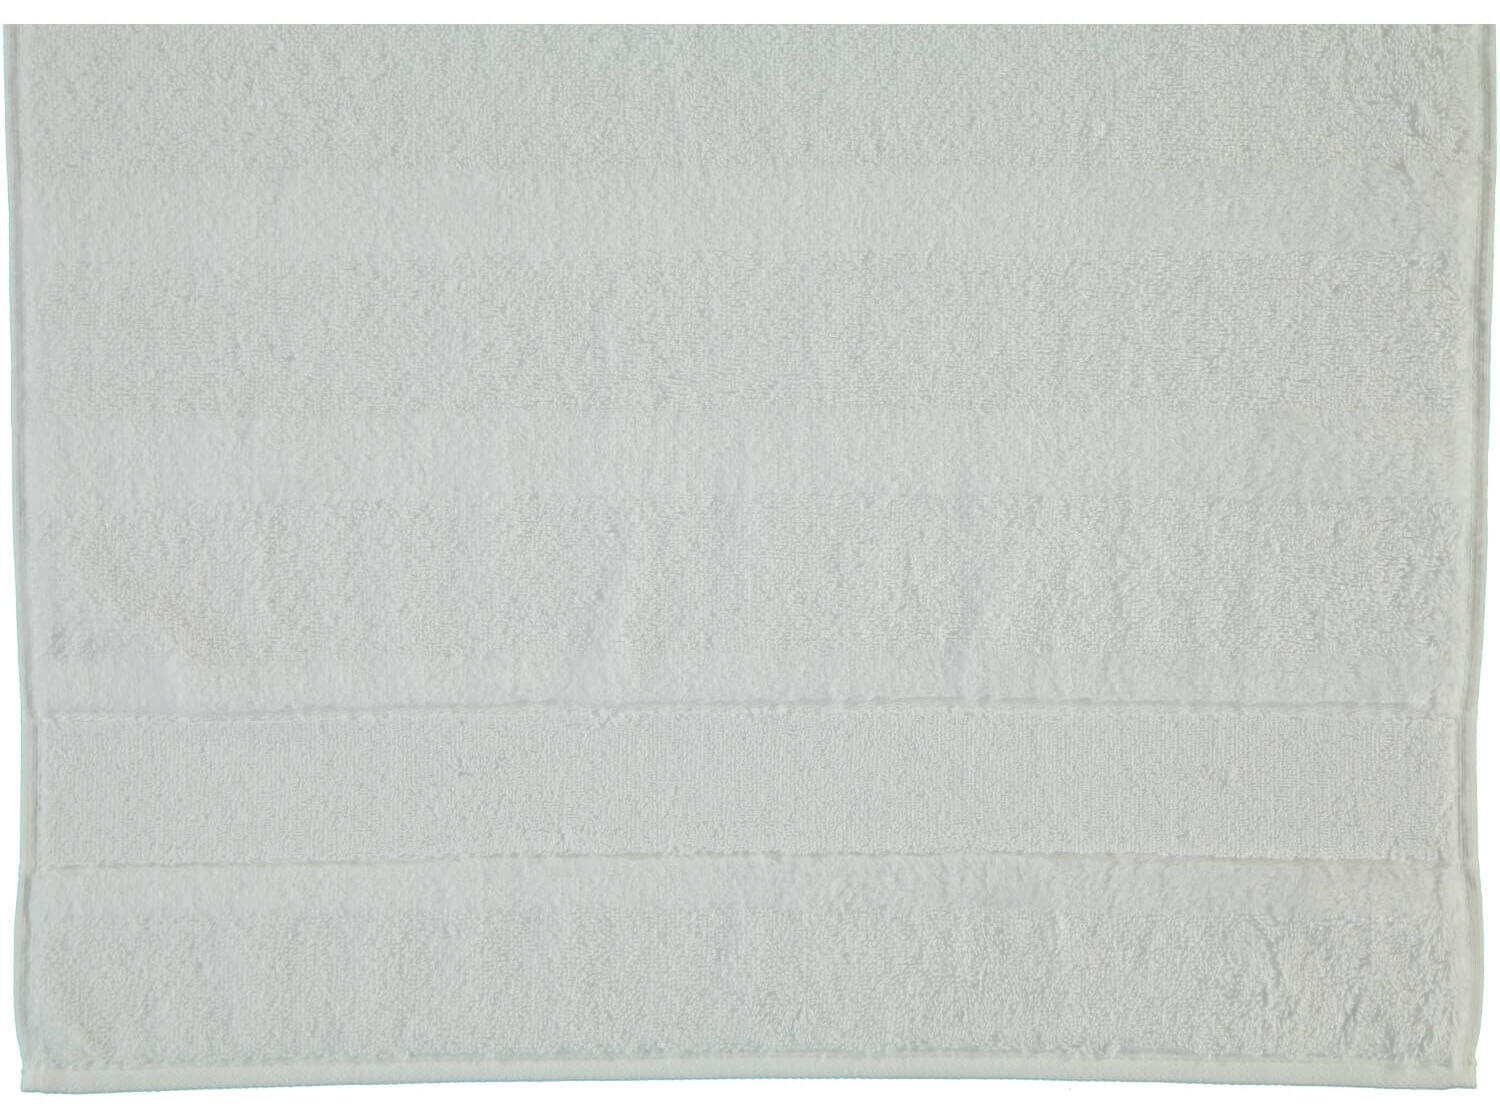 Хлопковое полотенце Noblesse Uni Weib ☞ Размер: 80 x 160 см